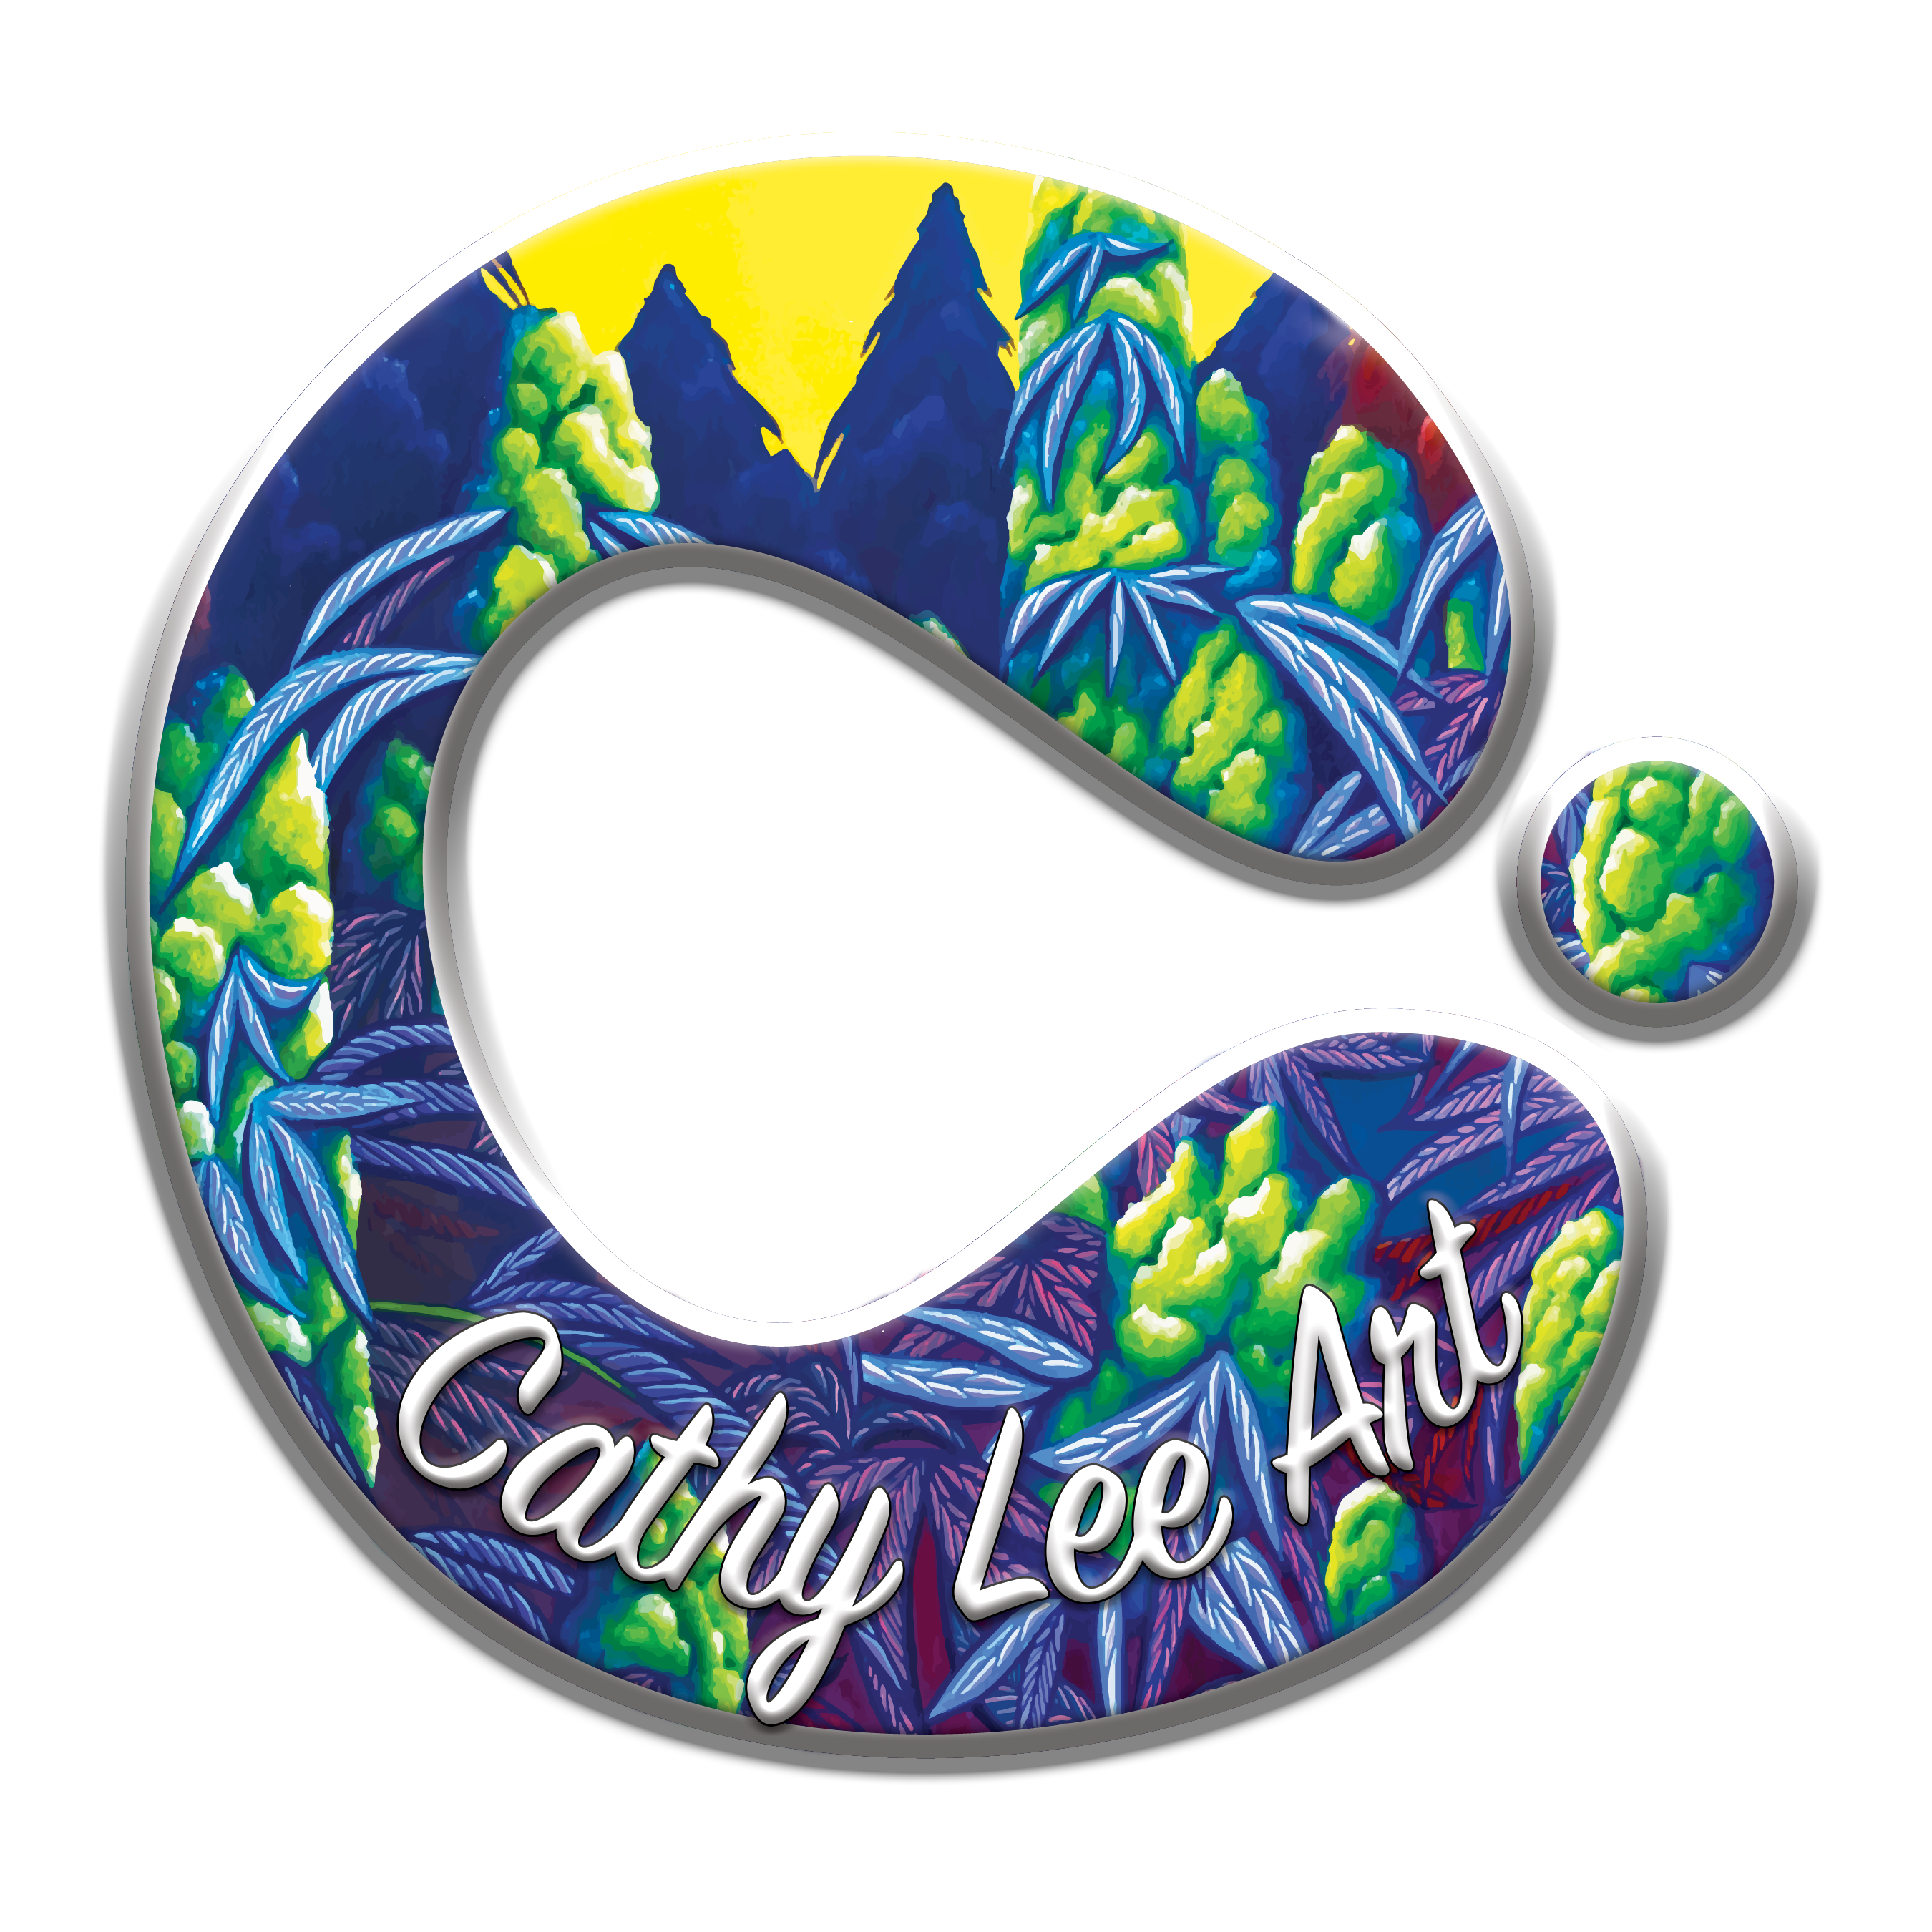 Cathy Lee Art